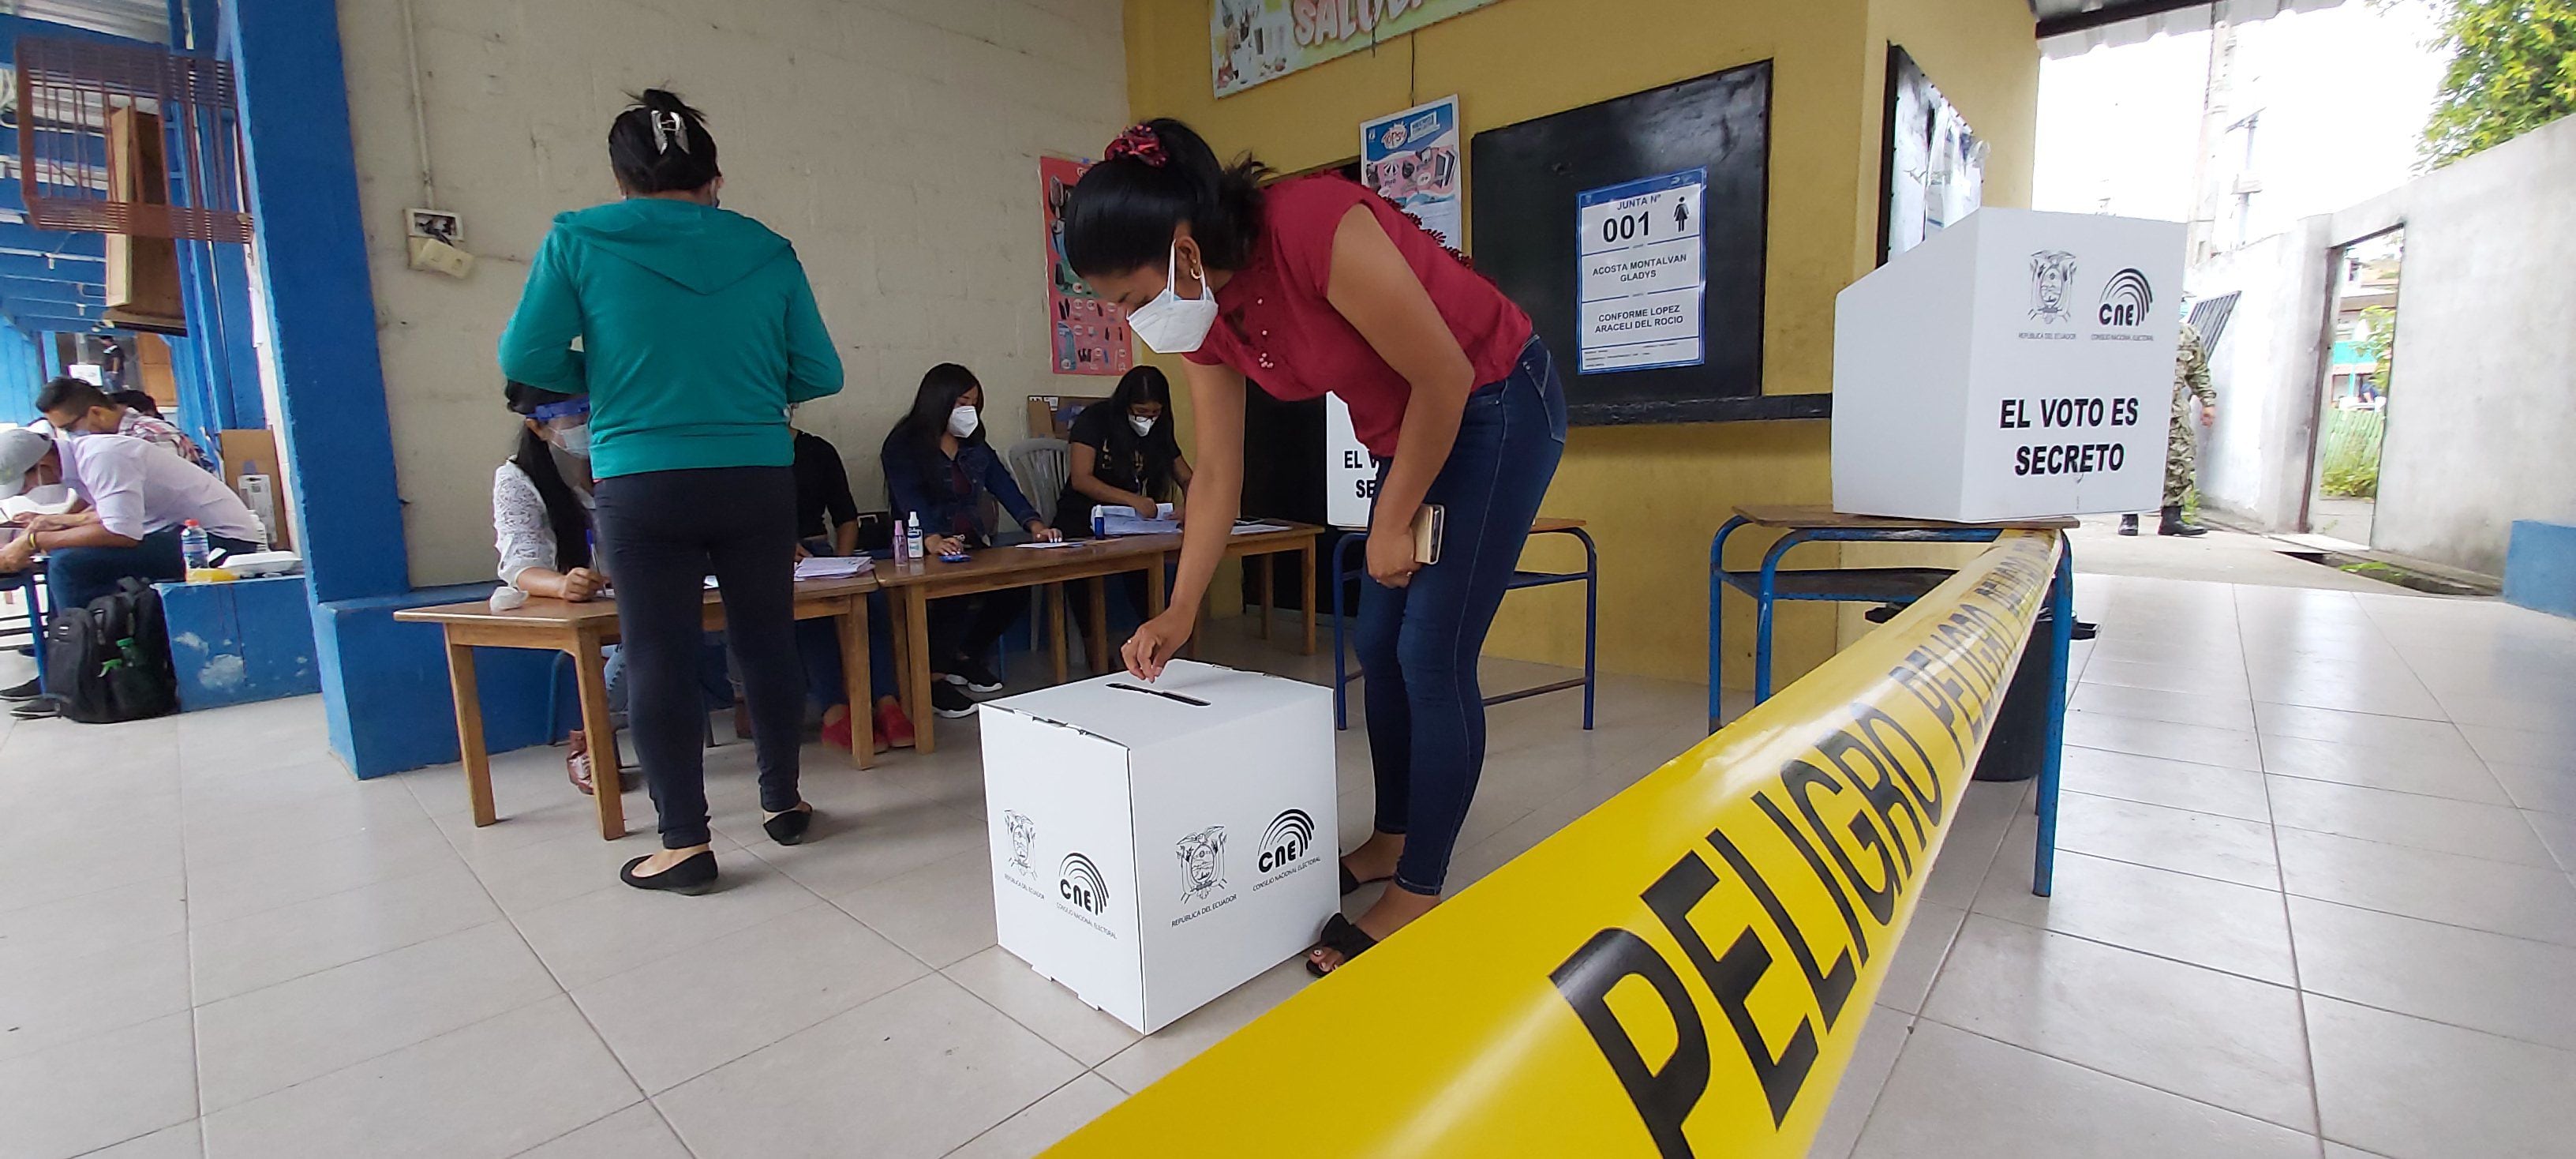 Presidenta de Junta Receptora del Voto en Manabí permitió a una mujer votar con otra cédula: ambas están detenidas